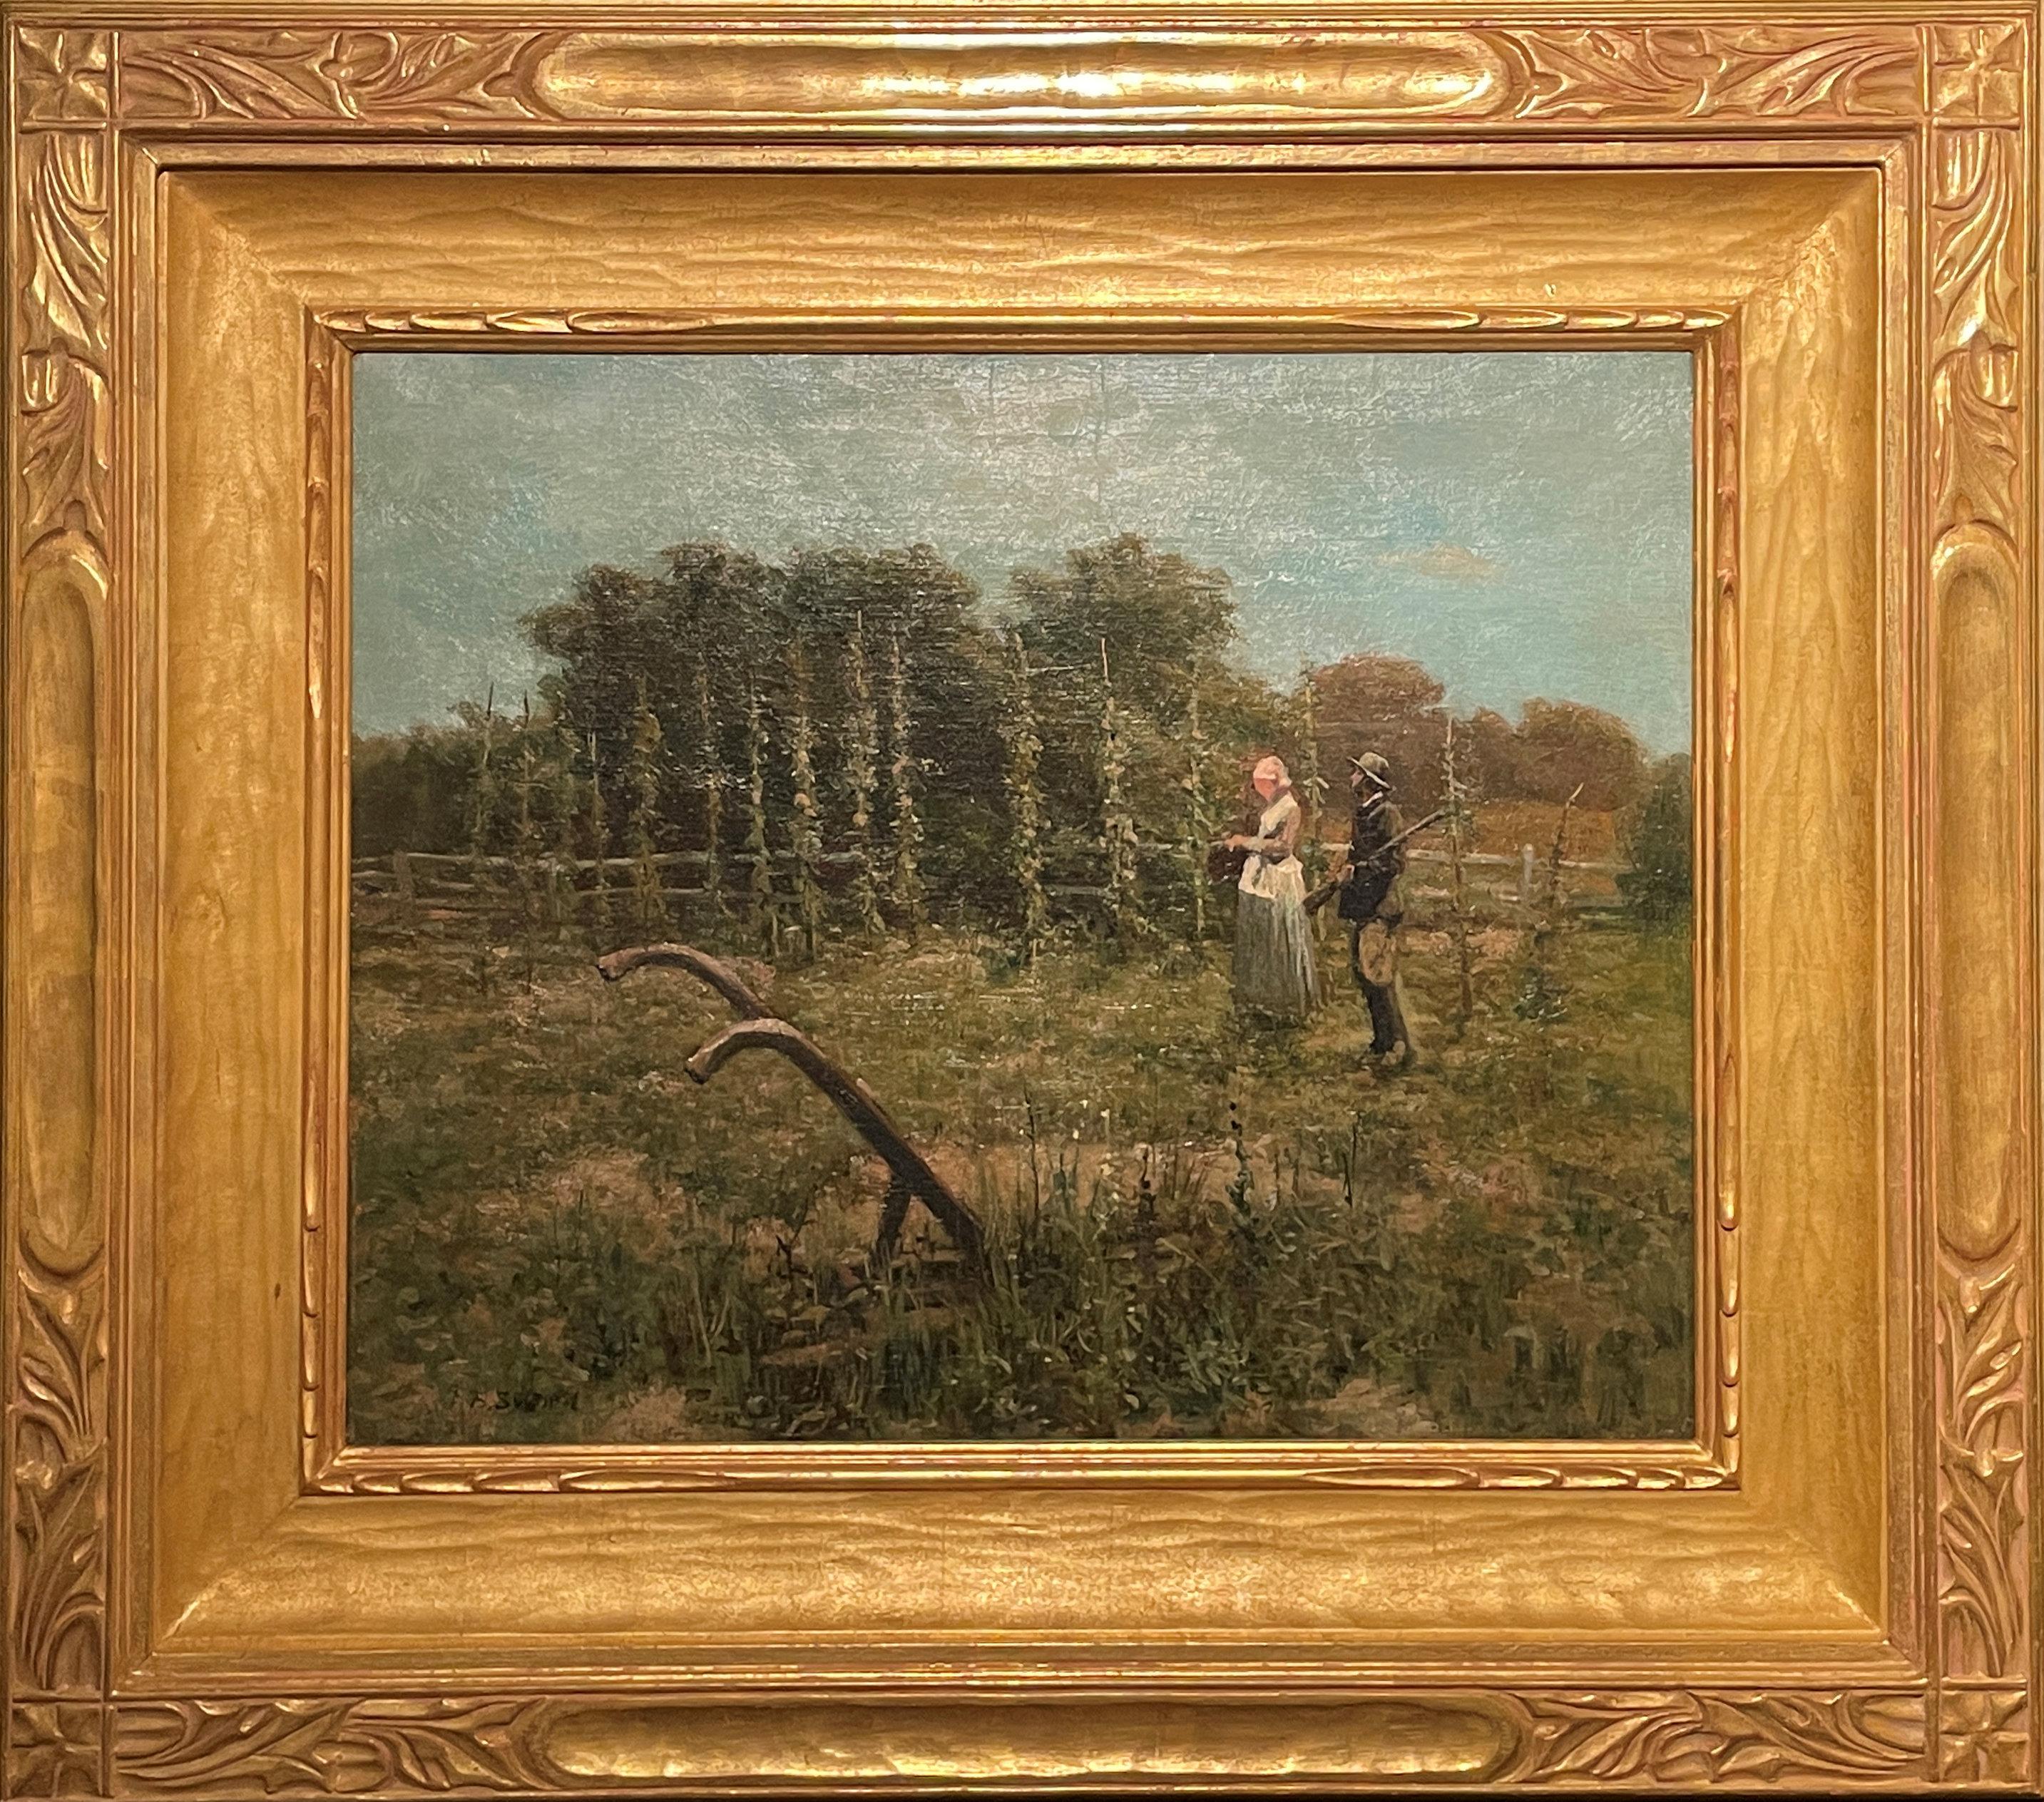 « Couple in the Field », épée de James Brade, chasseur sur paysage de ferme - Painting de James Brade Sword